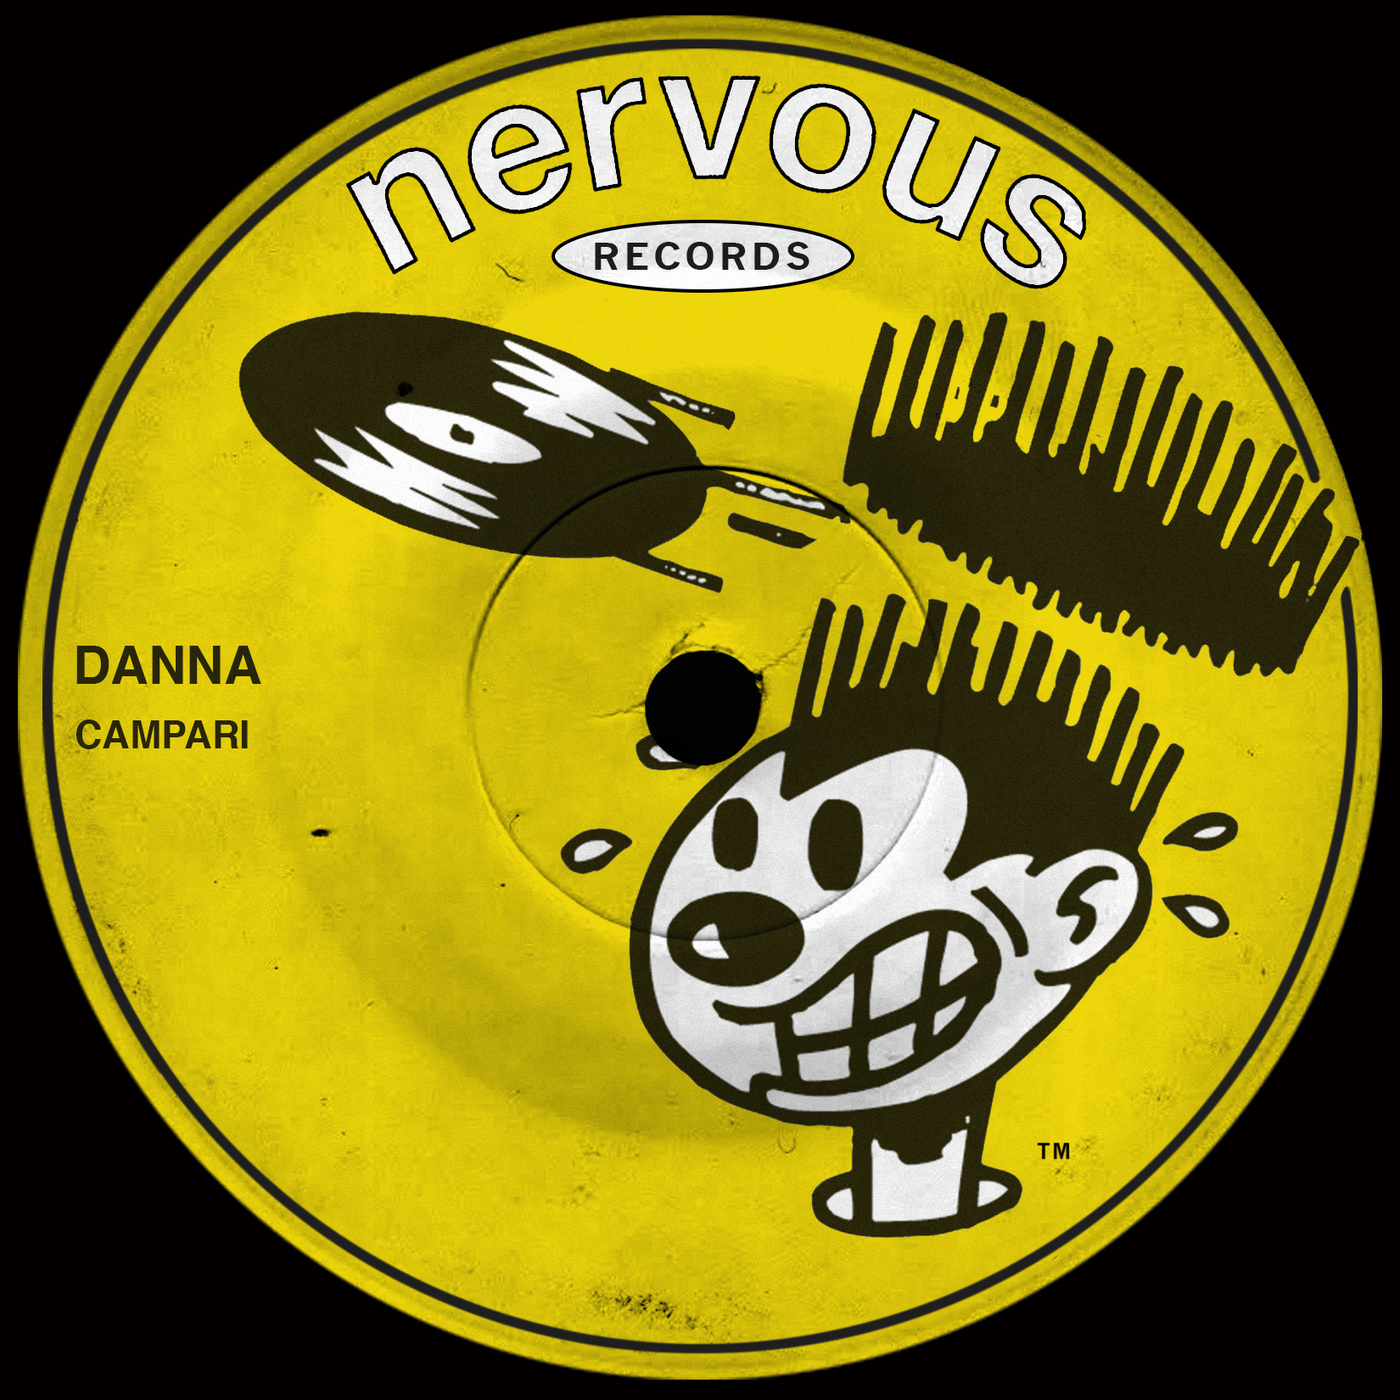 Danna - Campari / Nervous Records